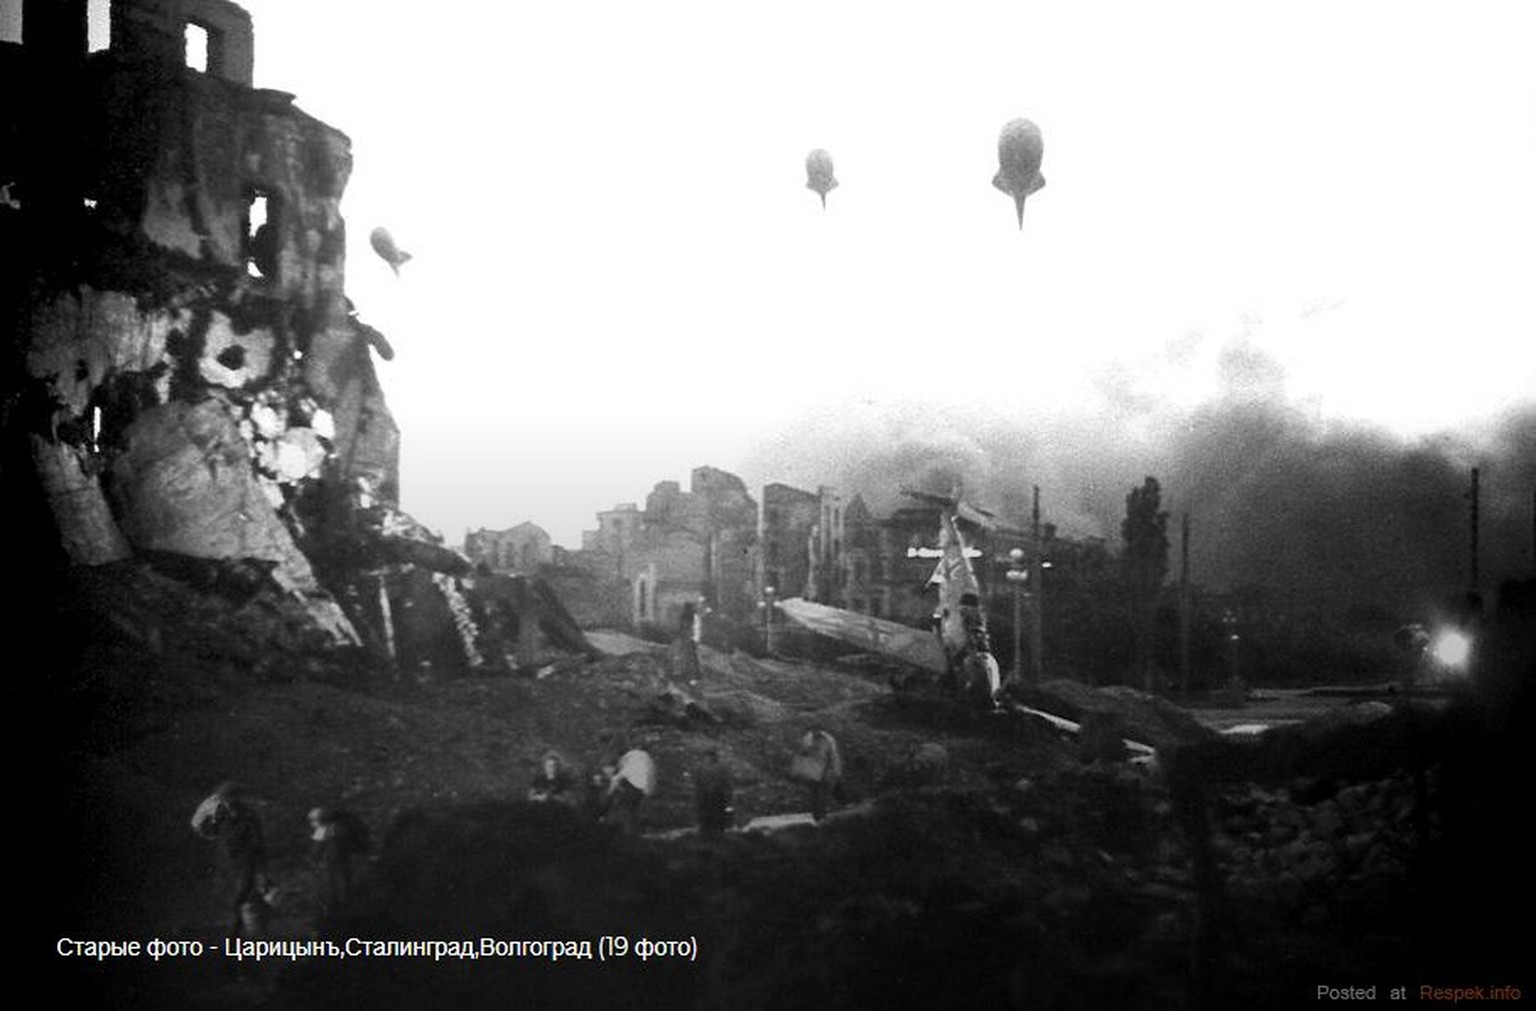 Szenerie wie aus einem Endzeitfilm: Ruinenlandschaft in Stalingrad.&nbsp;